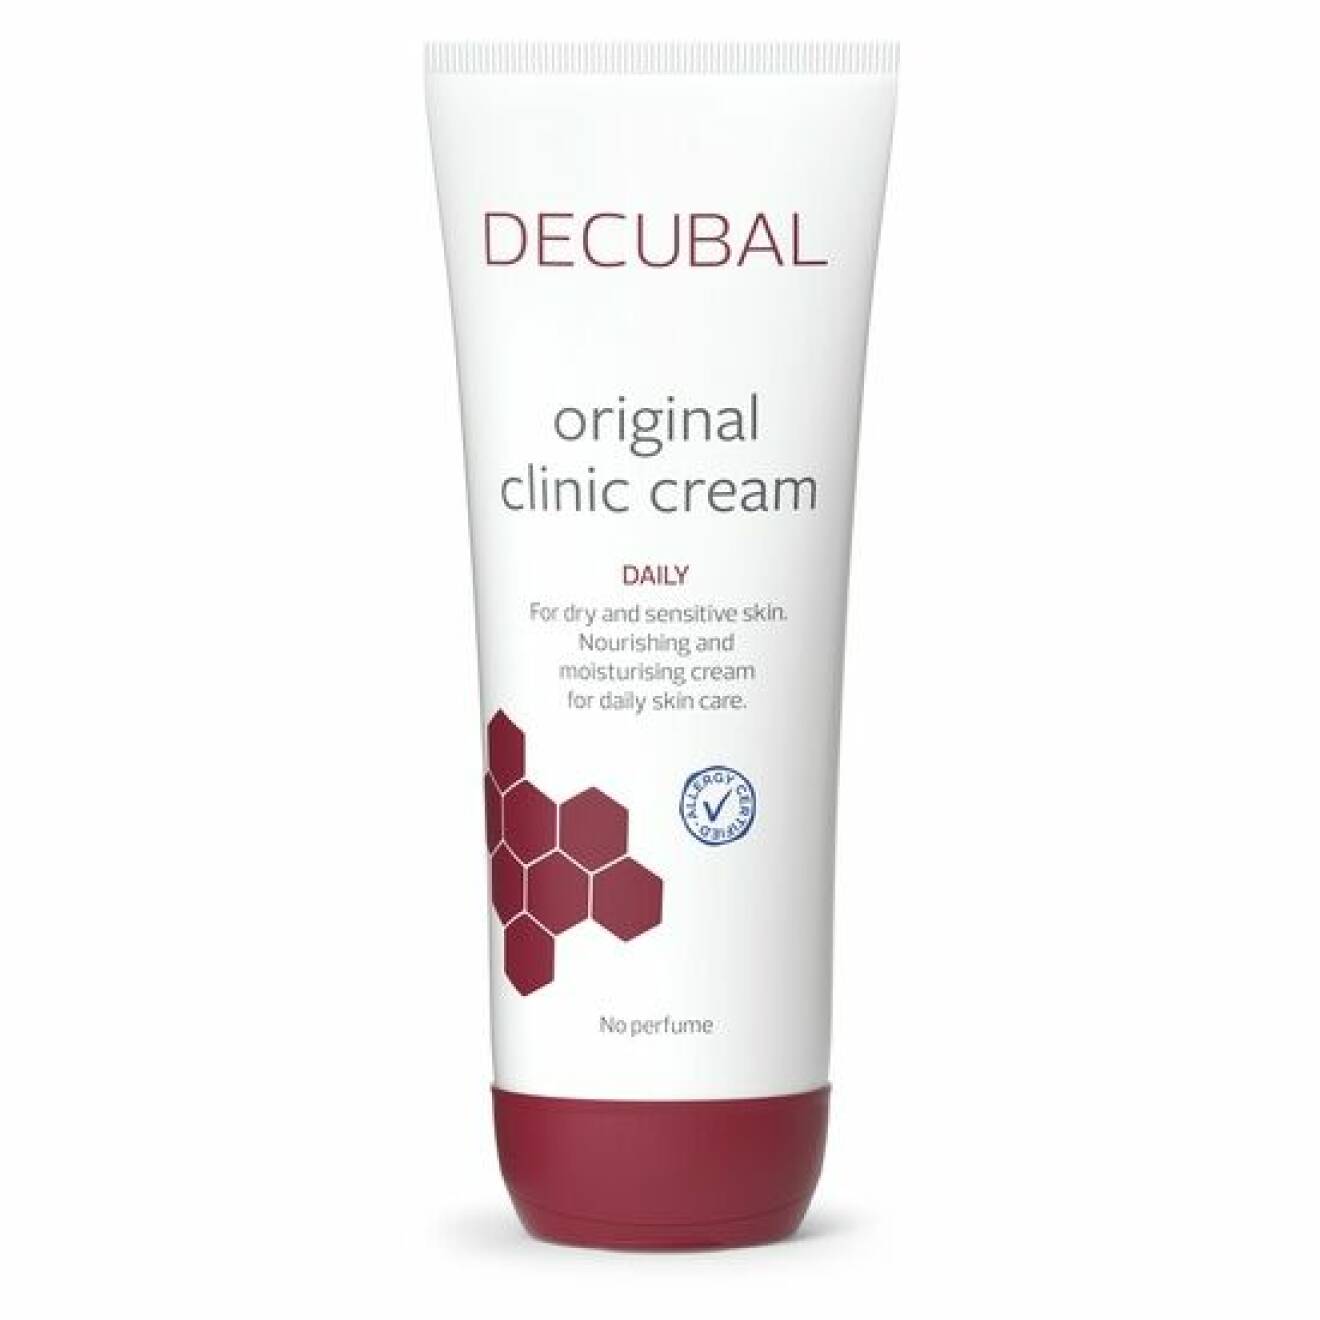 Decubal original clinic cream